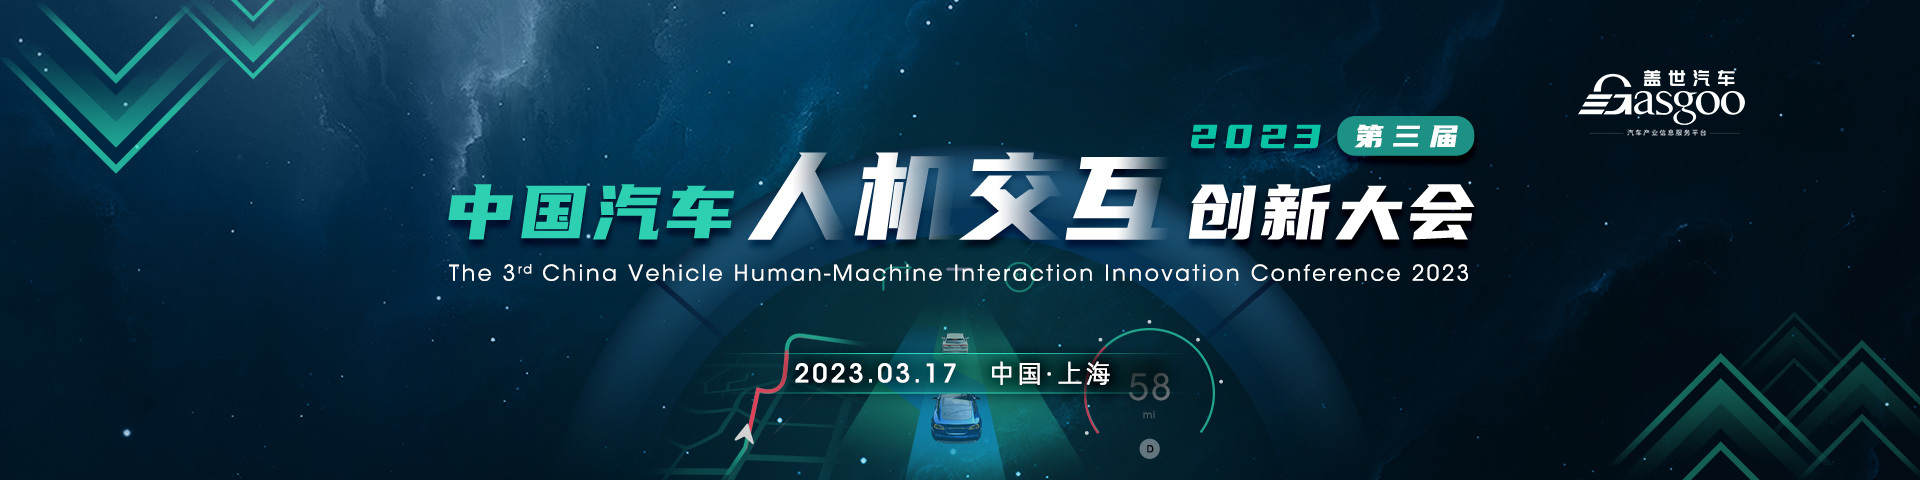 盖世汽车2023第三届中国汽车人机交互创新大会